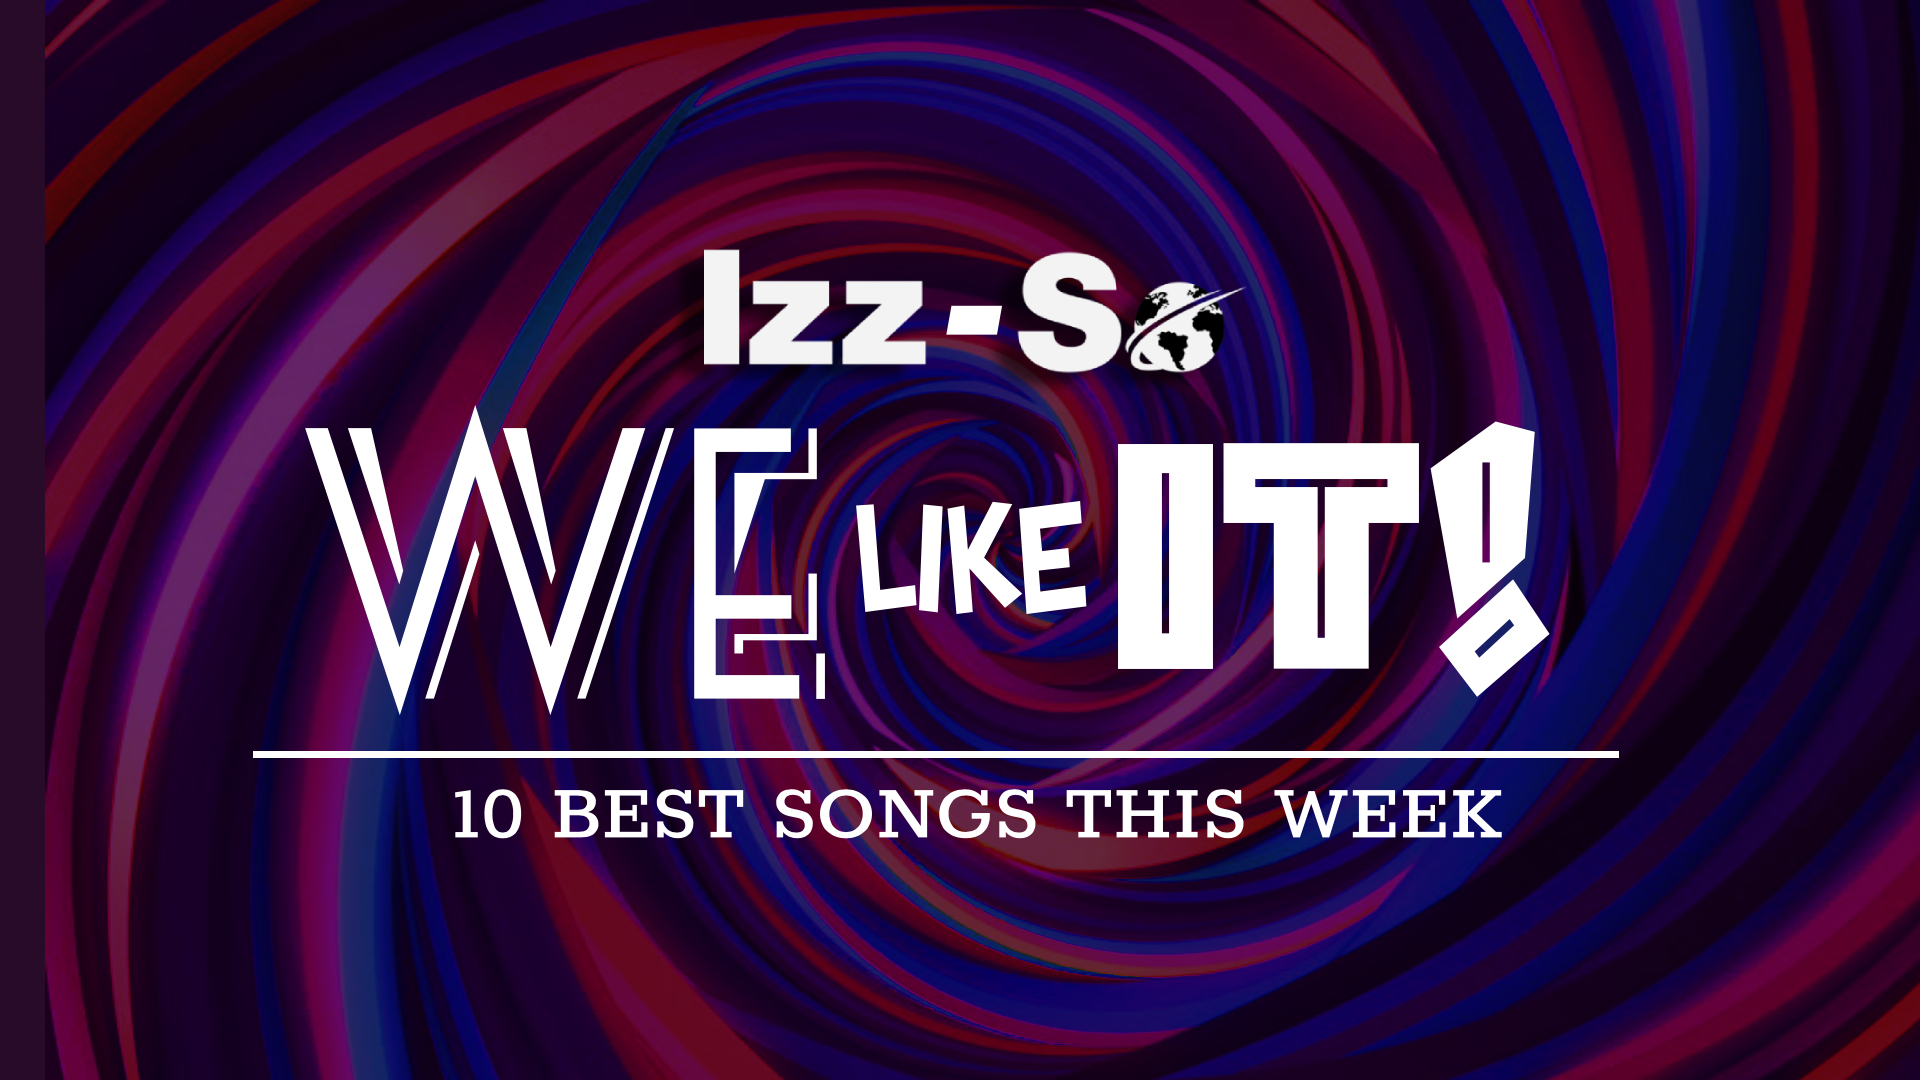 Izz-So We Like It! – 10 BEST SONGS THIS WEEK